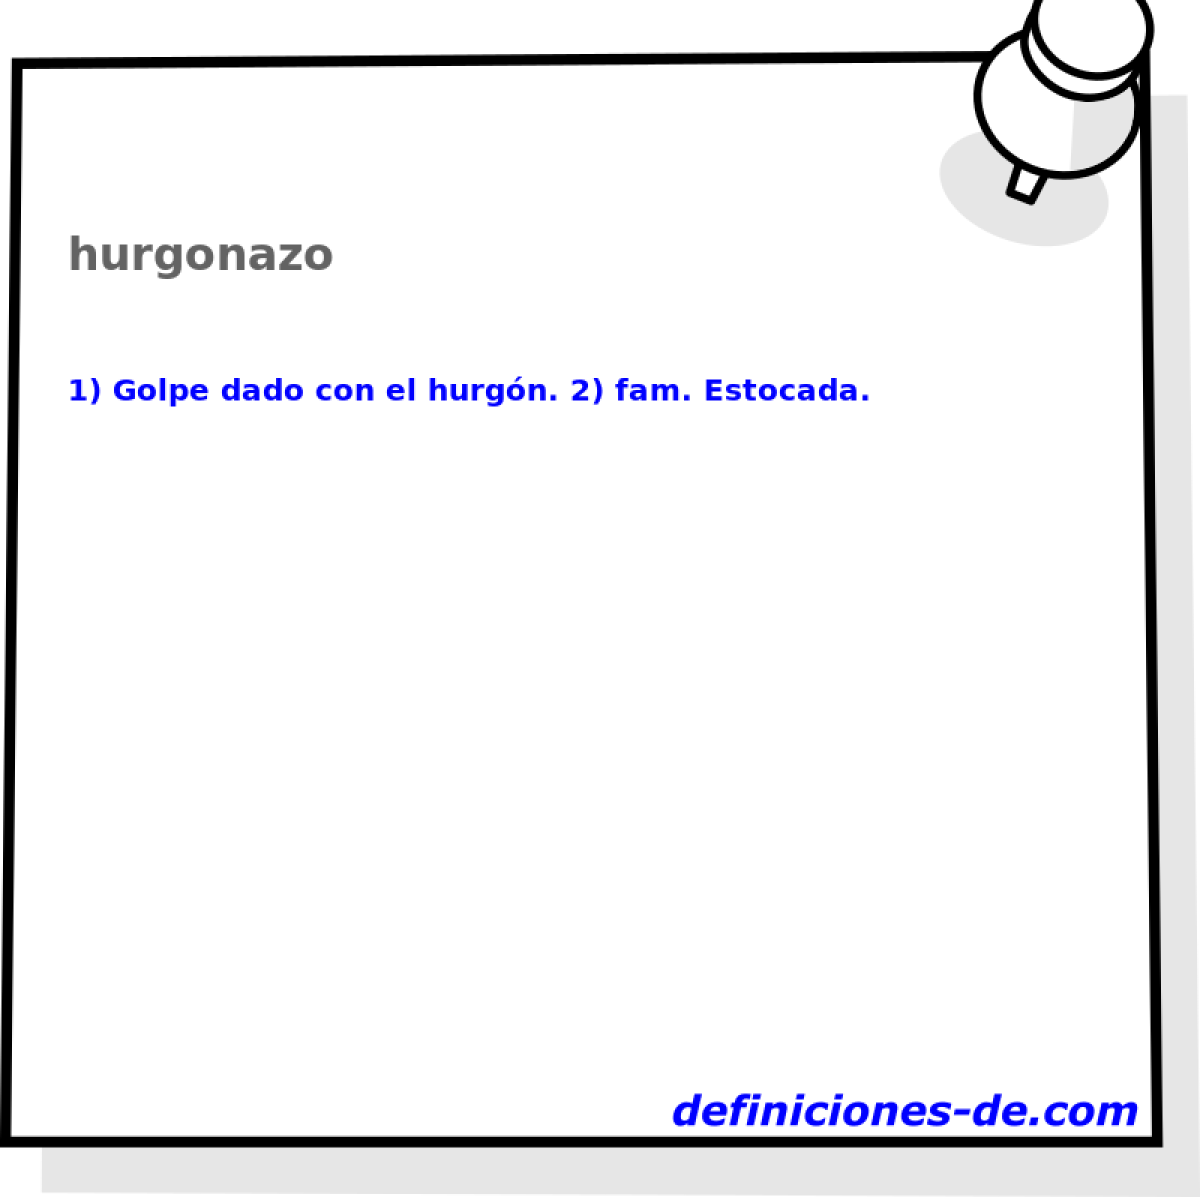 hurgonazo 